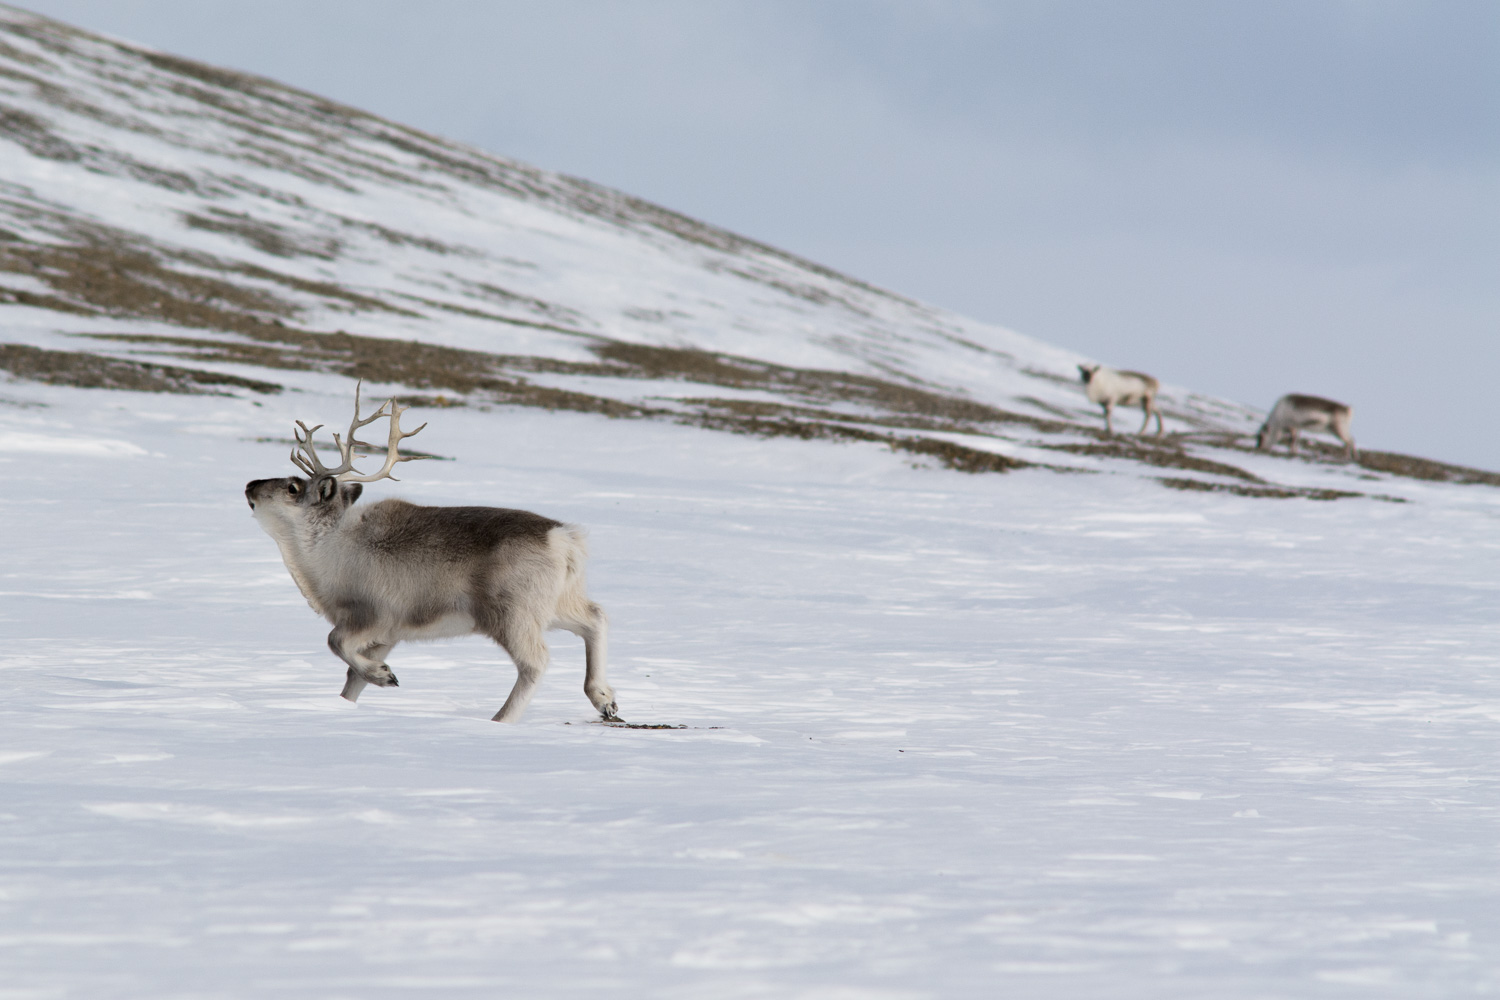 Svalbardrein // Svalbard reindeer